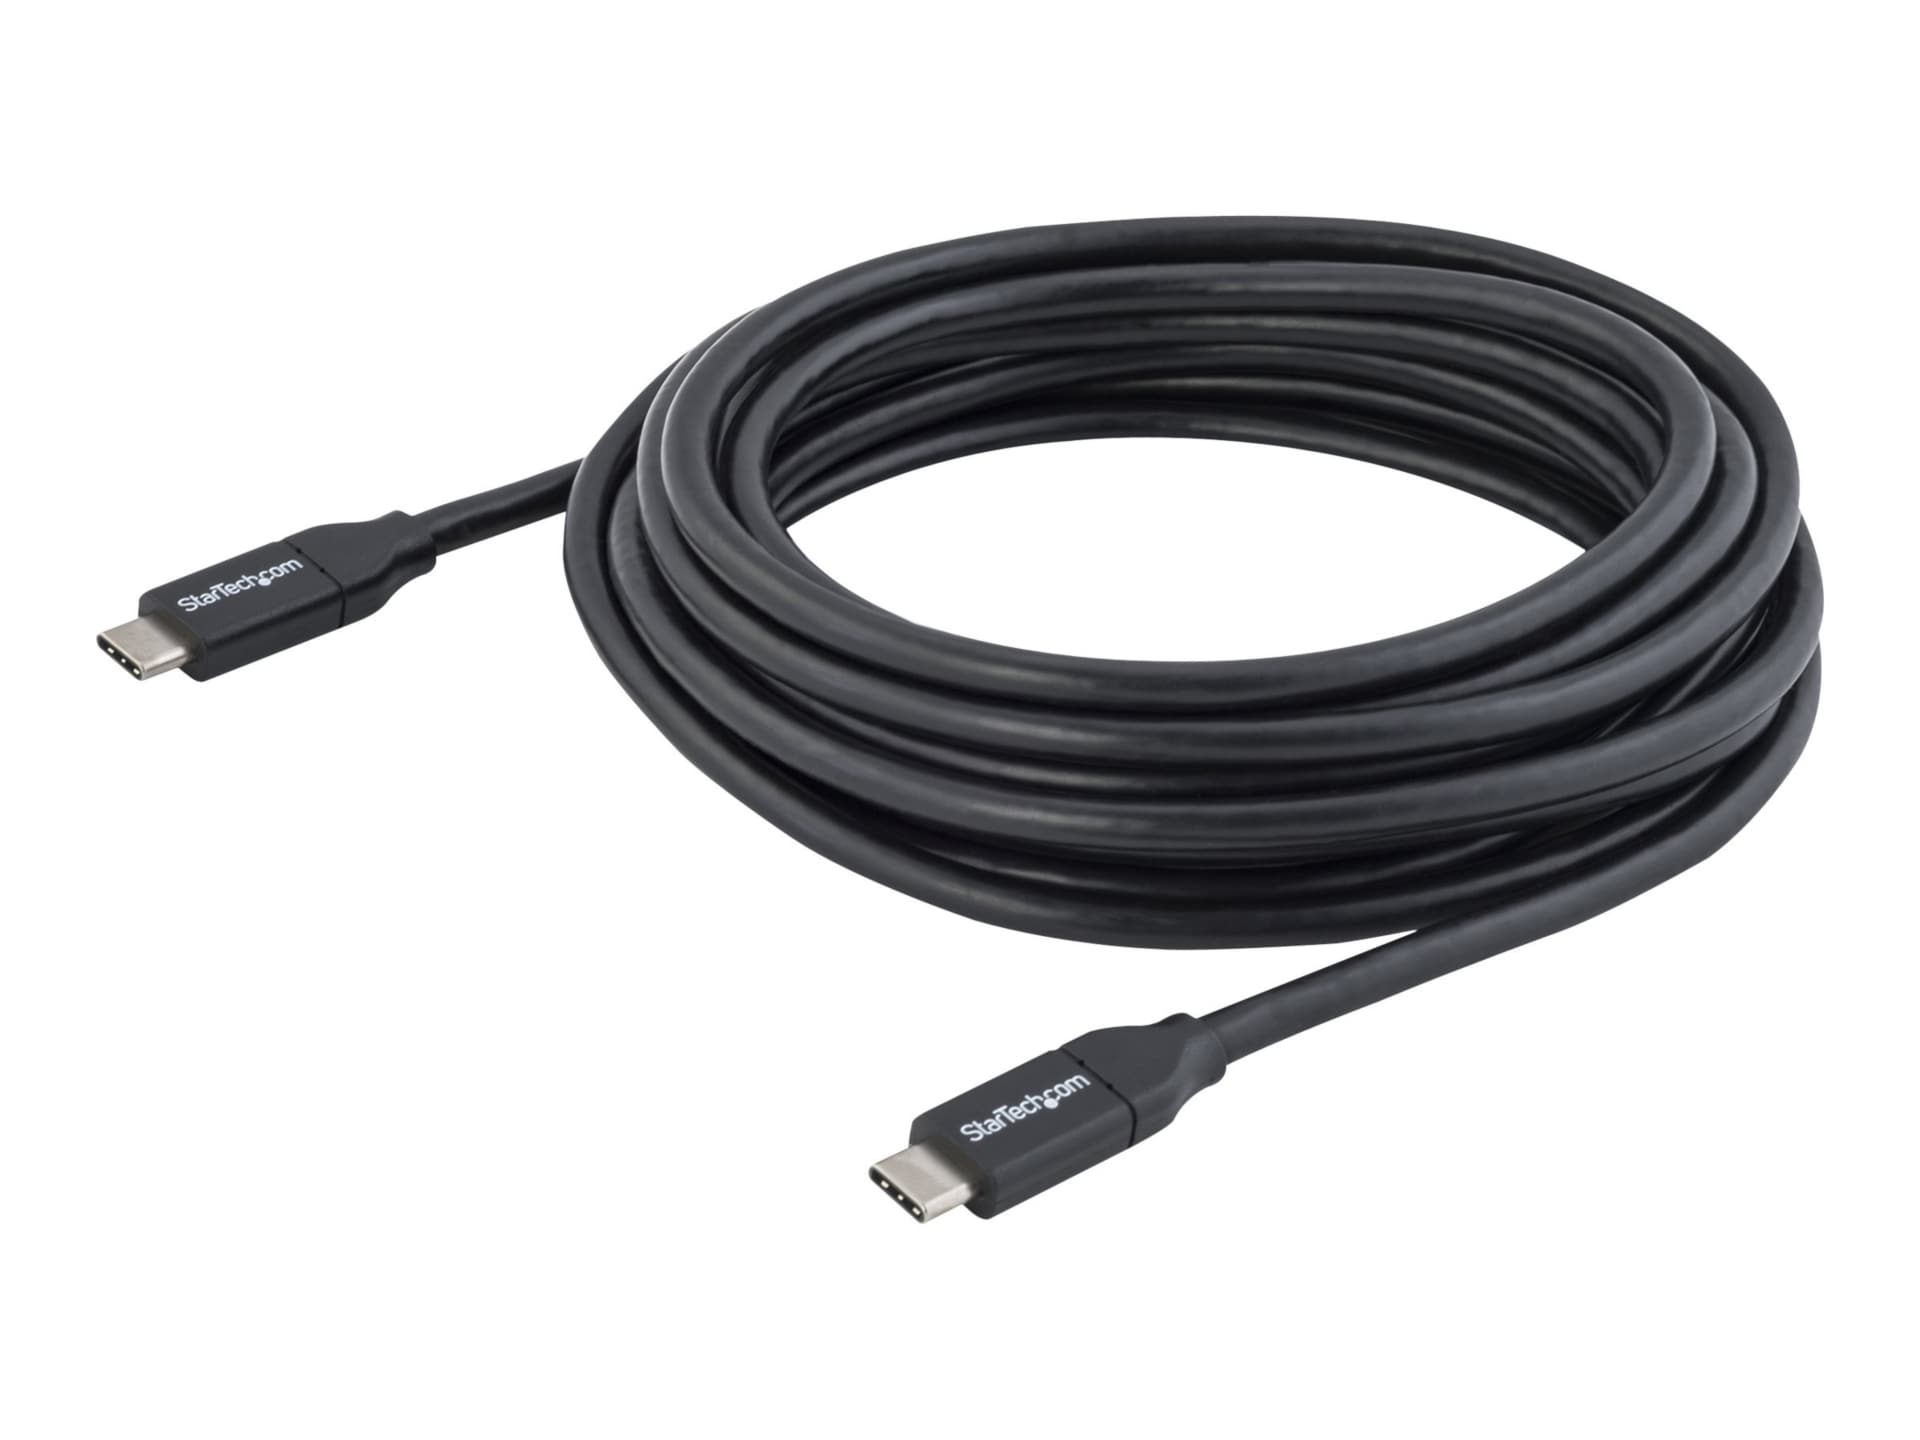 Câble USB C StarTech.com, 4 m 13 pi, avec PD 5 A – USB 2.0 – certifié USB-IF